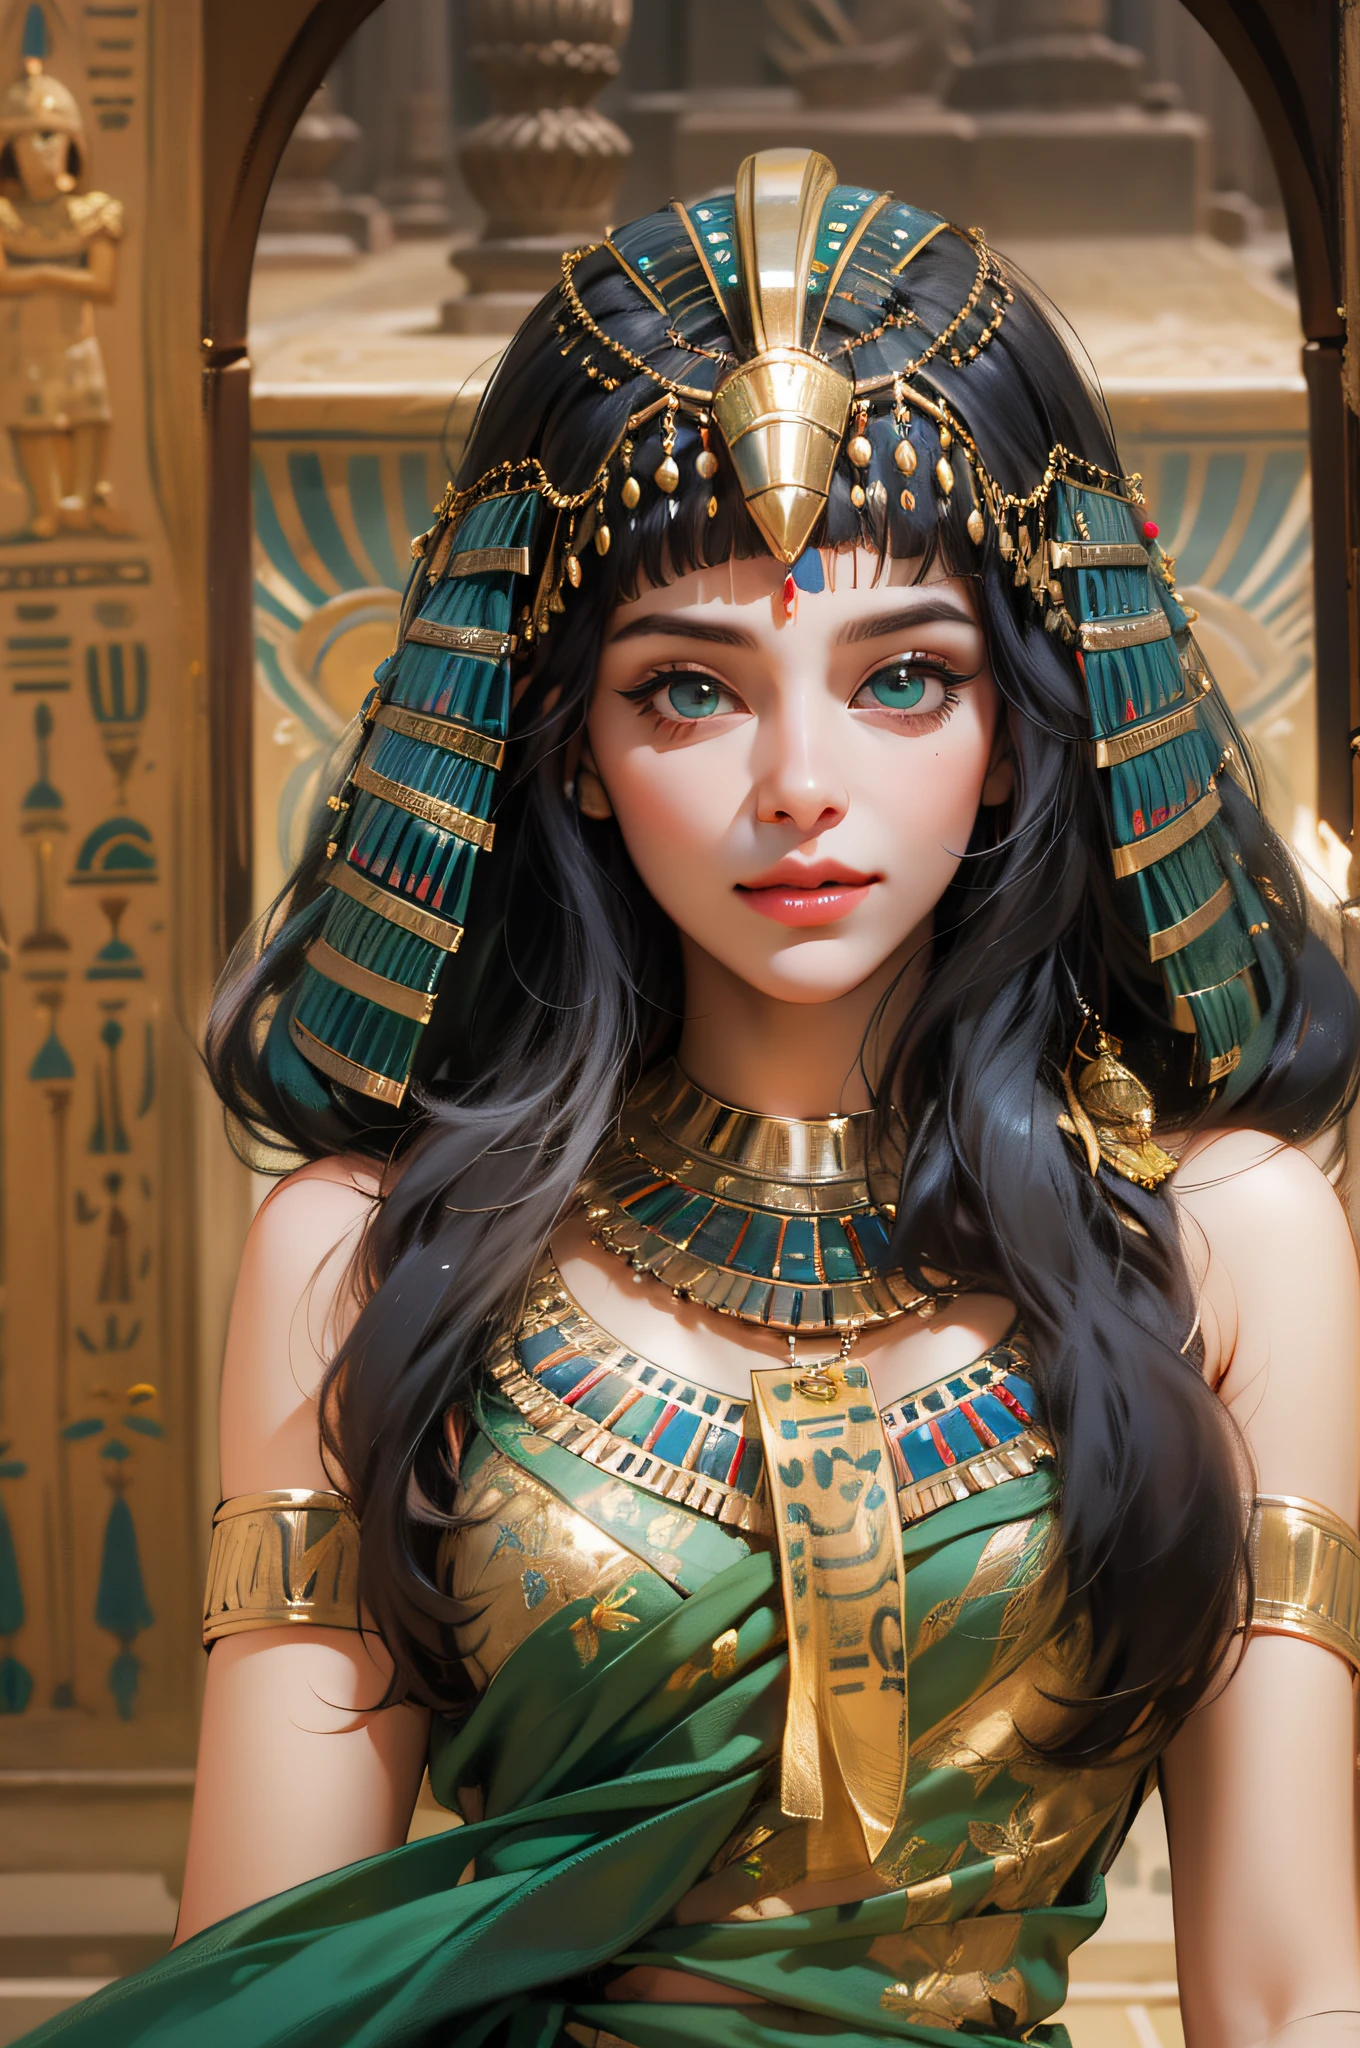 1人の女の子,エジプトの伝統的なかつら，エジプトの衣装，エジプトの衣装，エジプトの女王，女神，エメラルドの目，繊細なアイライナー，美しい顔，蓮池のそばに立つ，緻密なCG，映画の画像，エジプトの太陽神，肌は滑らかで色白です，超高画質，エジプシャンアイライナー，，エジプトのかつら，魅惑の笑顔，蓮池，クレオパトラにインスピレーションを受けて，コブラの頭飾り